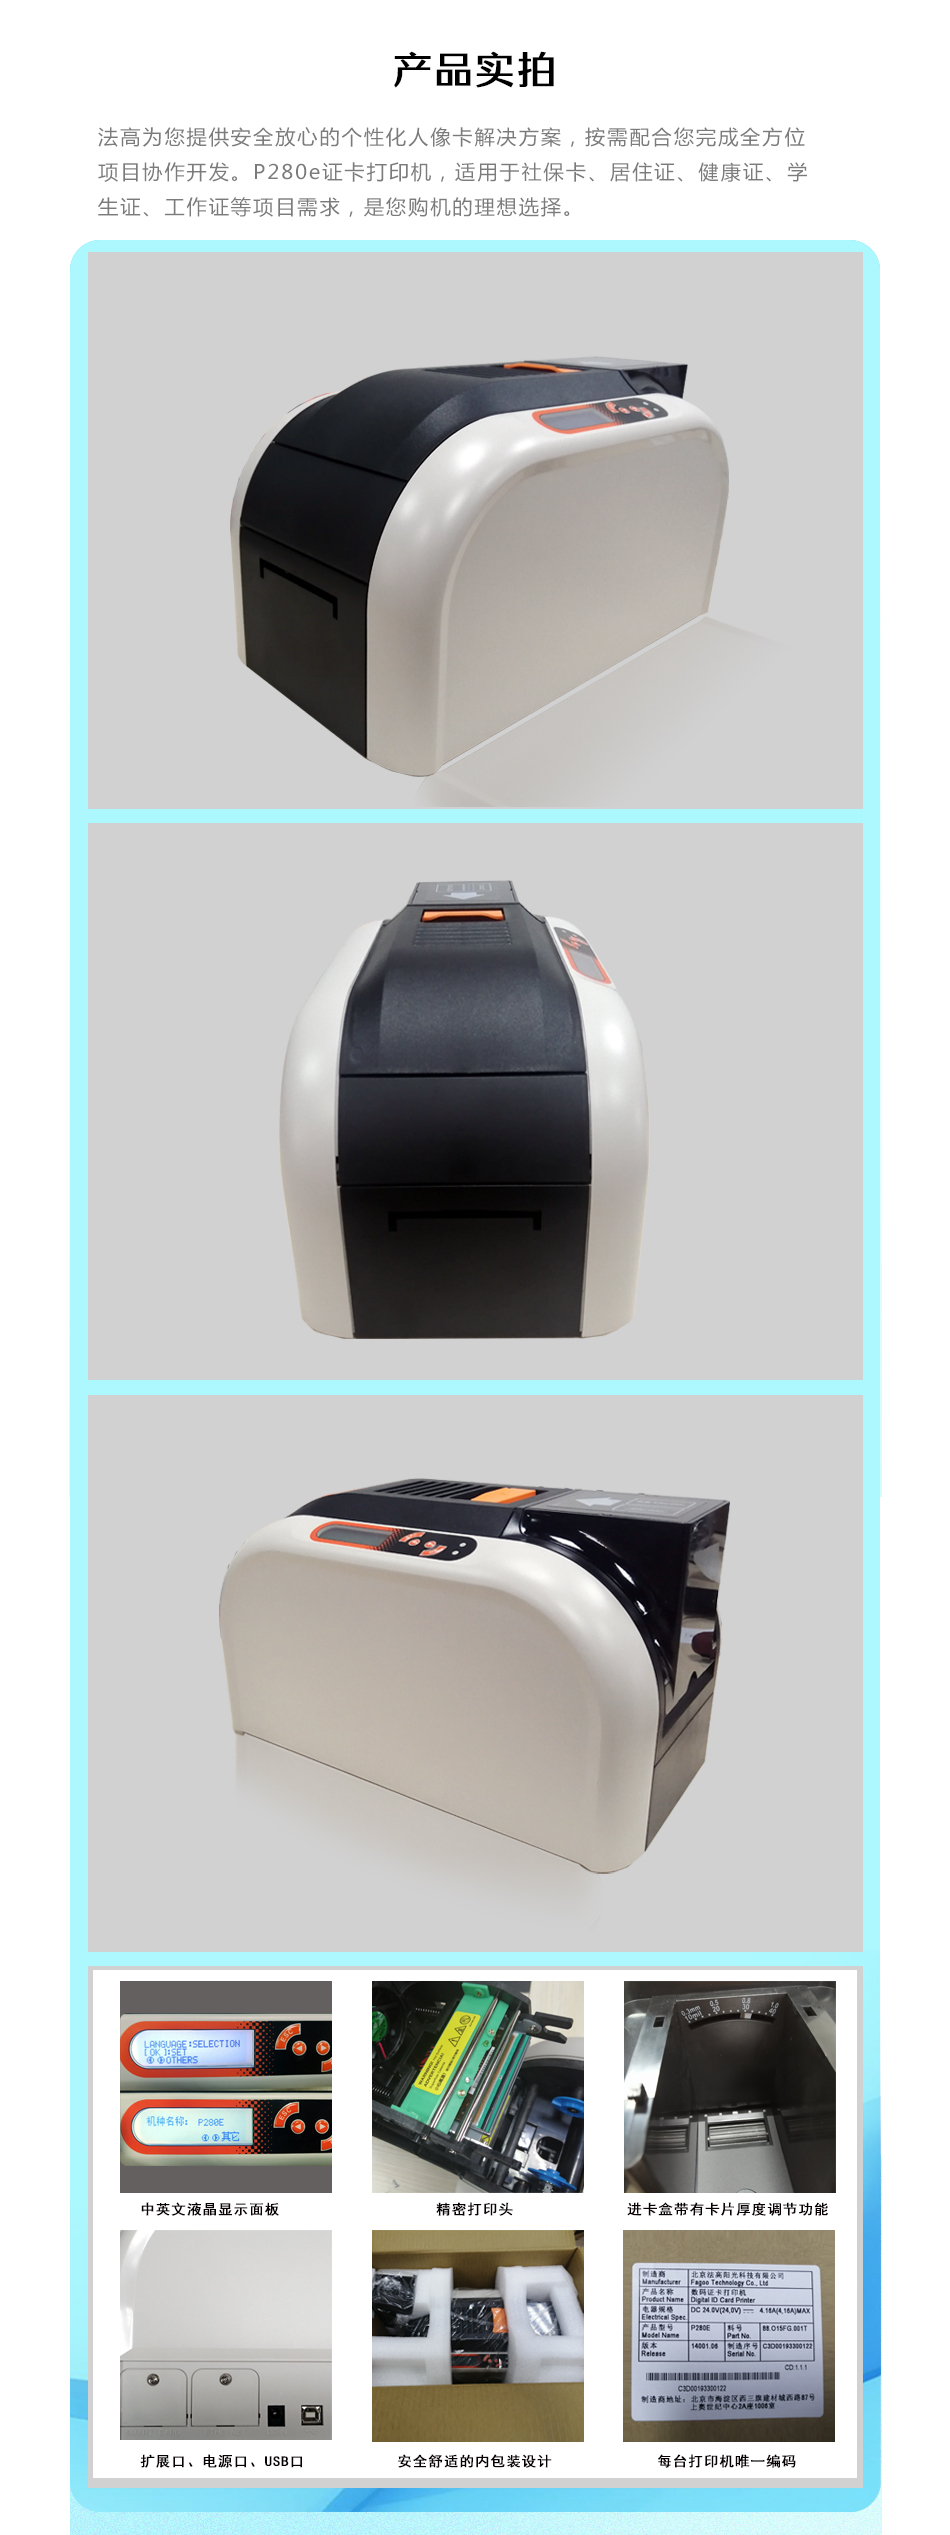 法高Fagoo办公设备数码证卡打印机Fagoo P280e单面机 制卡机 学生卡 工作证打印机 一卡通打印机